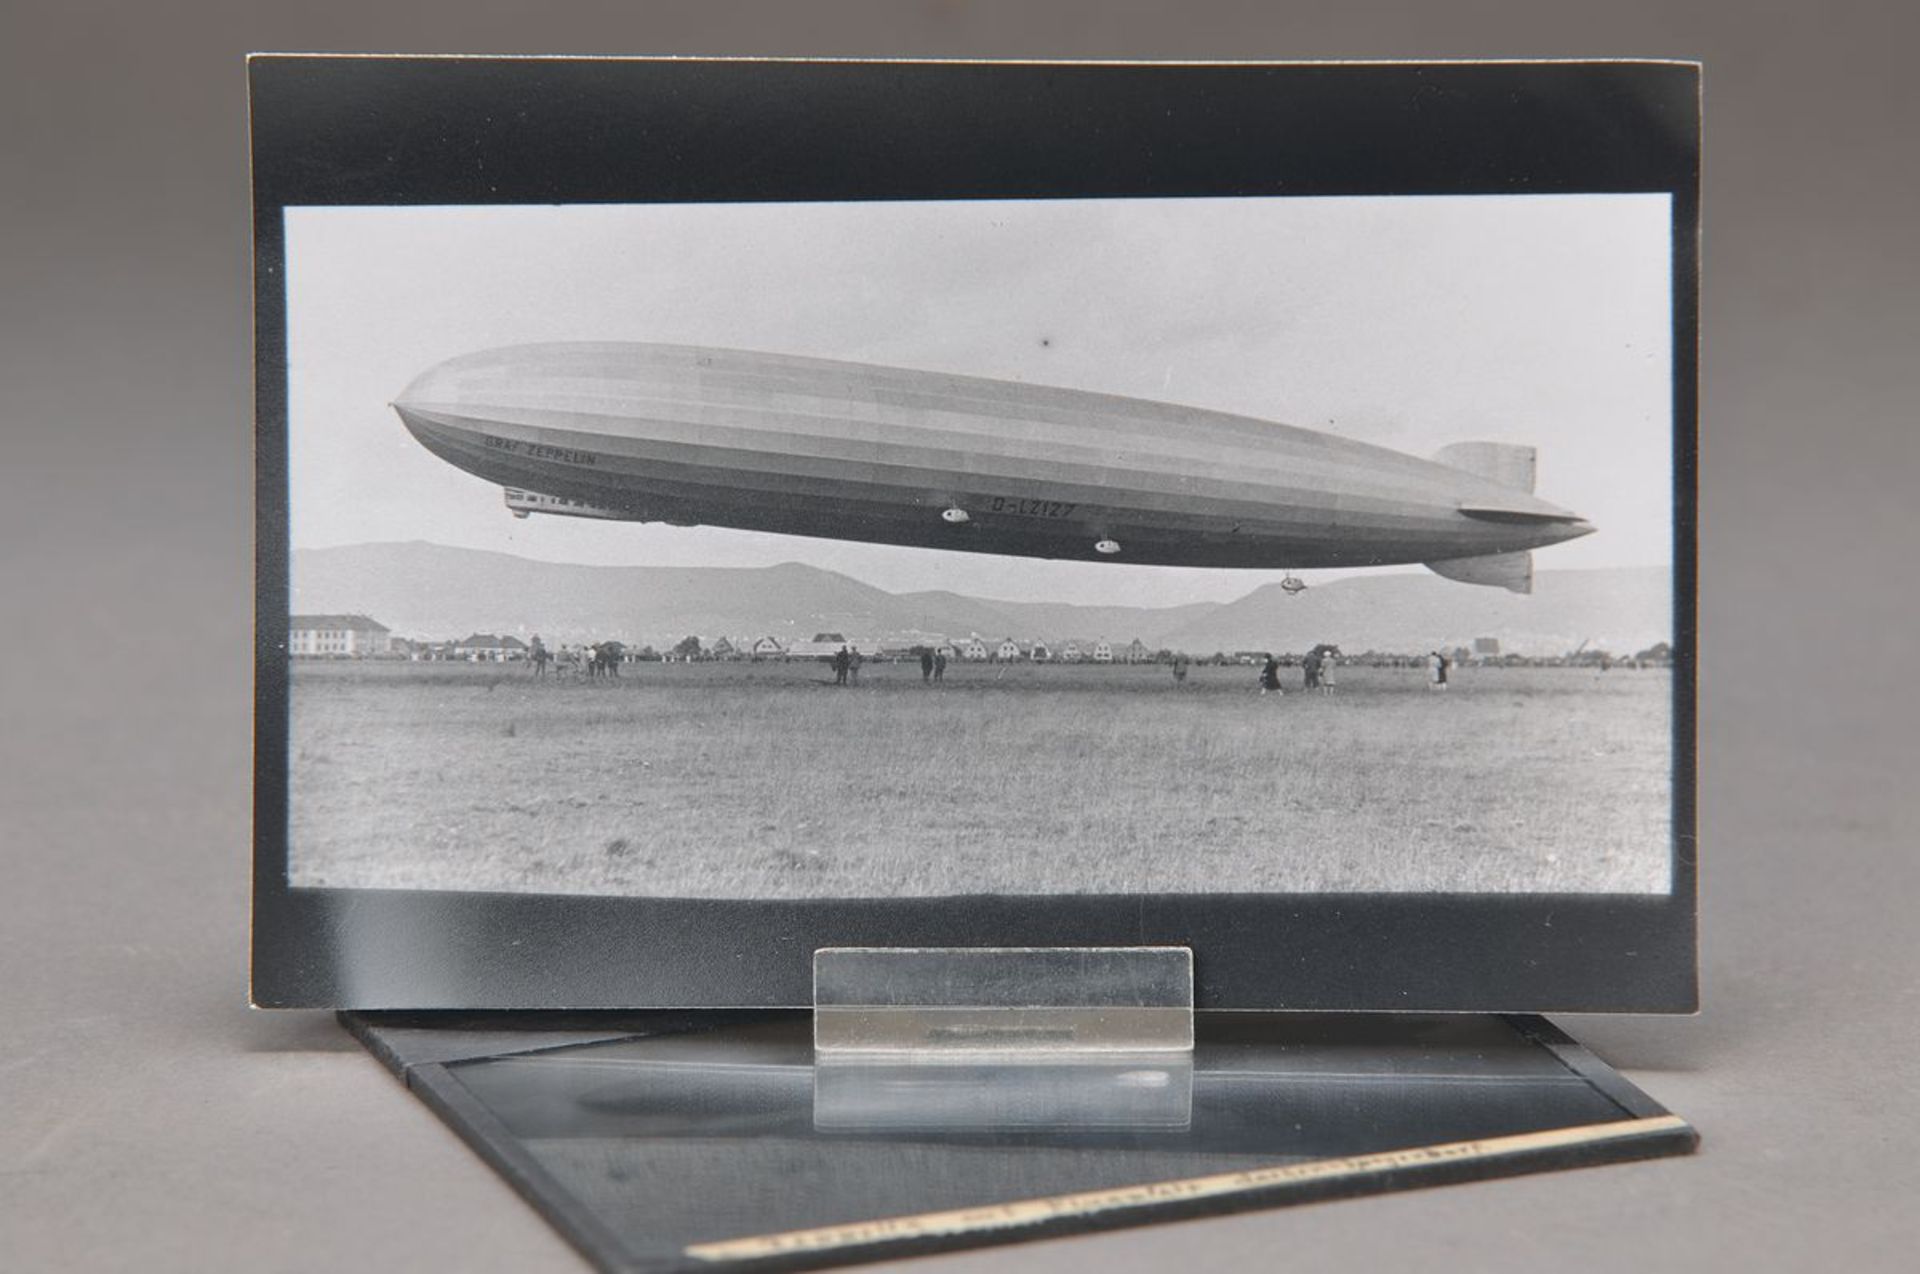 Originalfotoplatte, Zeppelinlandung auf dem Flugplatz Lachen-Speyerdorf, 13.7. 1930, ca. 9x12cm,